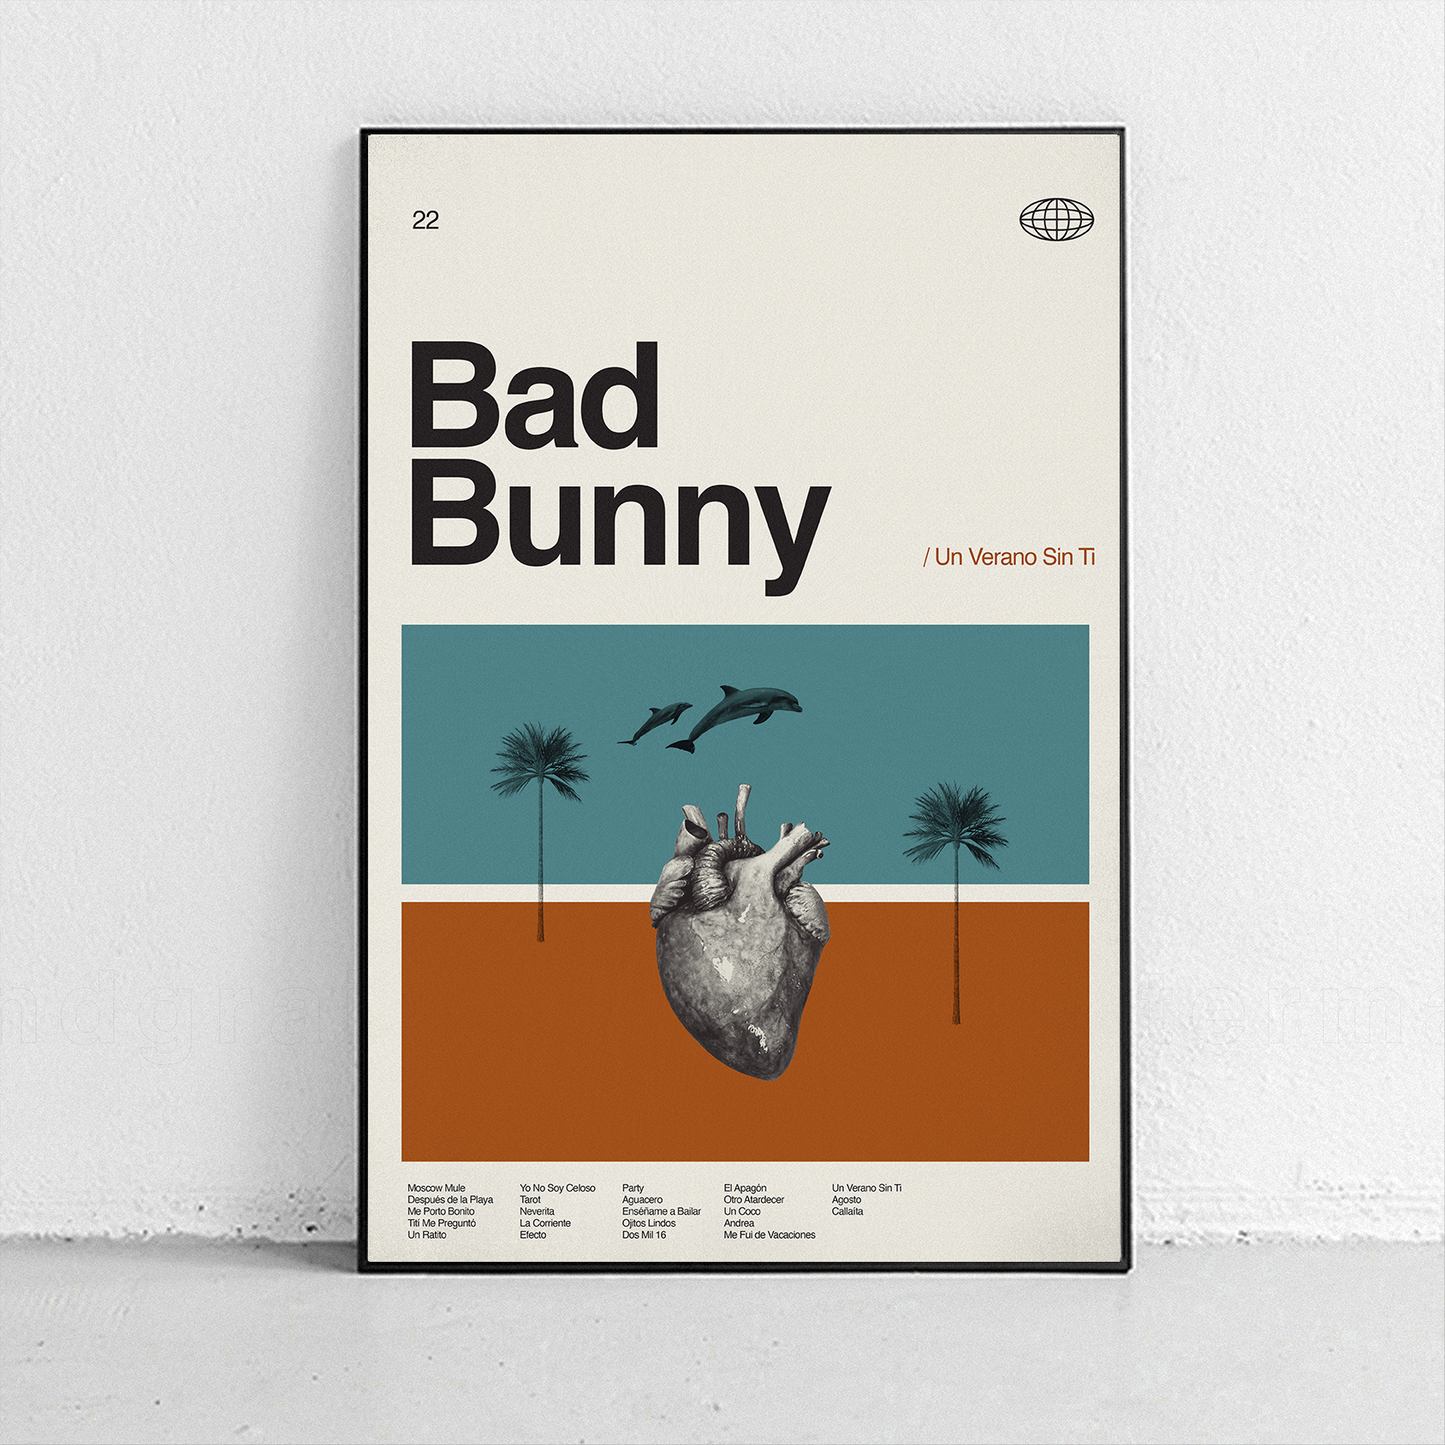 Bad Bunny - Un Verano Sin Ti